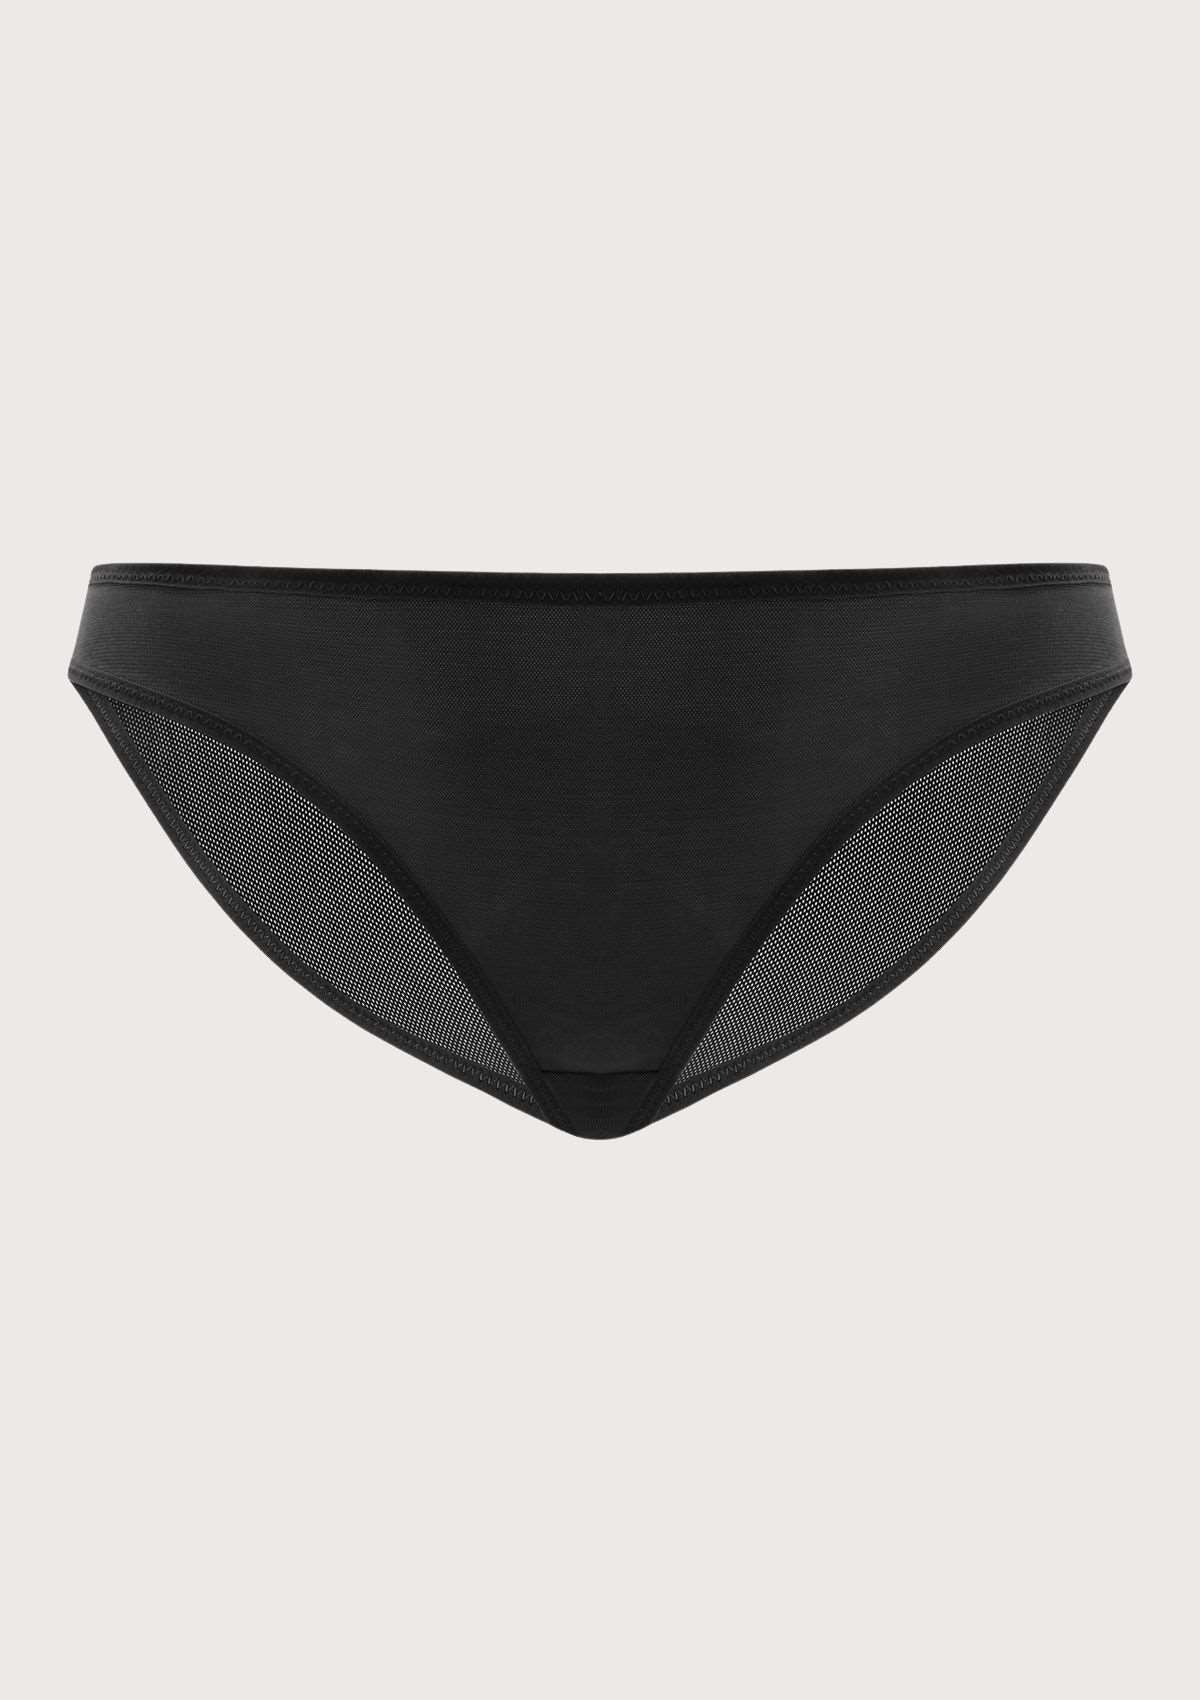 HSIA Billie Smooth Sheer Mesh Lightweight Soft Comfy Bikini Underwear - XL / Dark Green